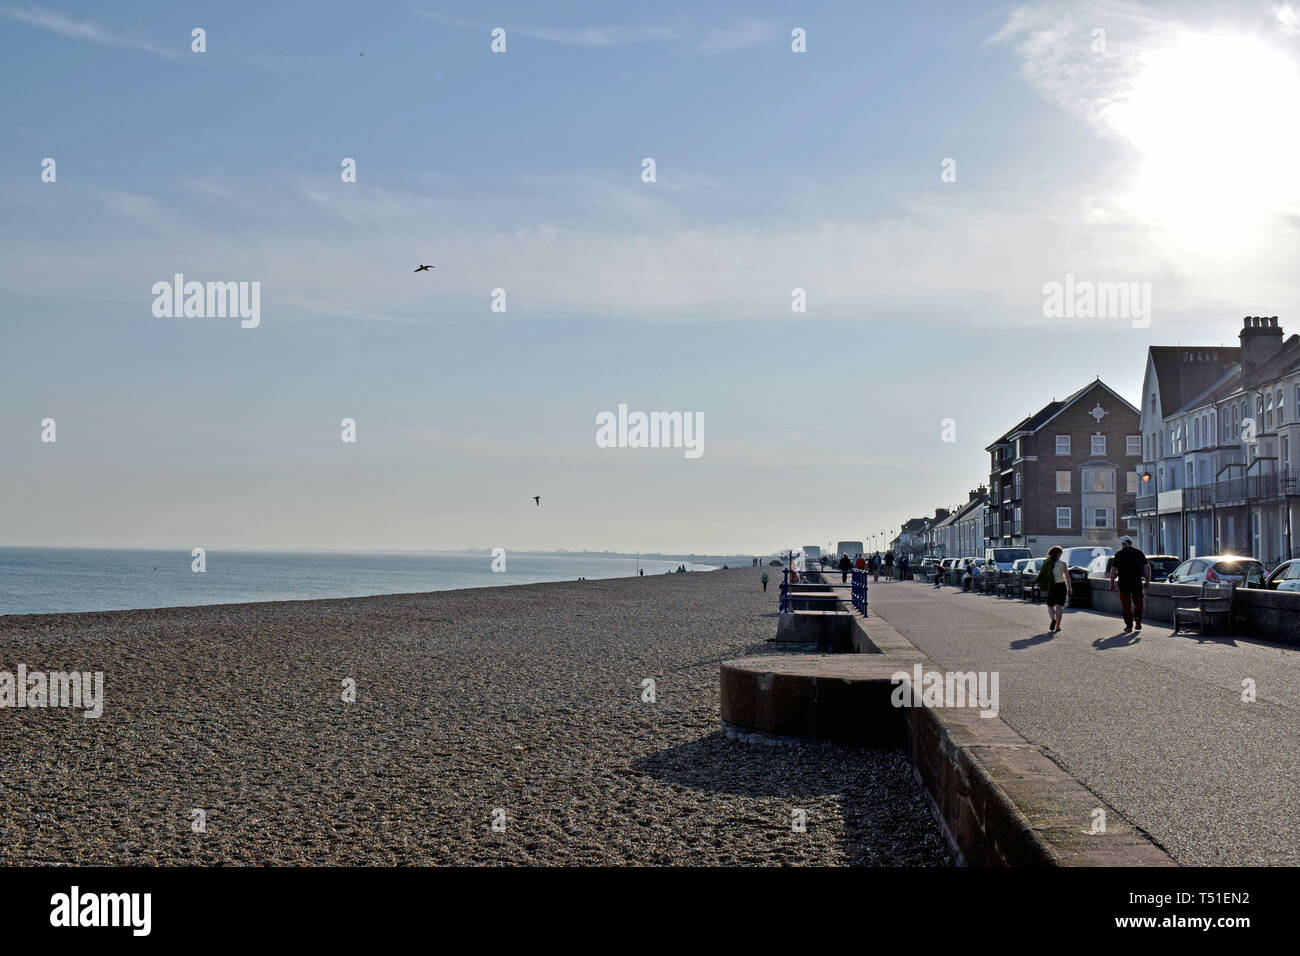 Une scène de bord de mer dans le Kent en Angleterre, les gens qui marchent le long du front de mer avec des maisons d'un côté et la plage de galets et de la mer et ciel bleu l'autre côté Banque D'Images